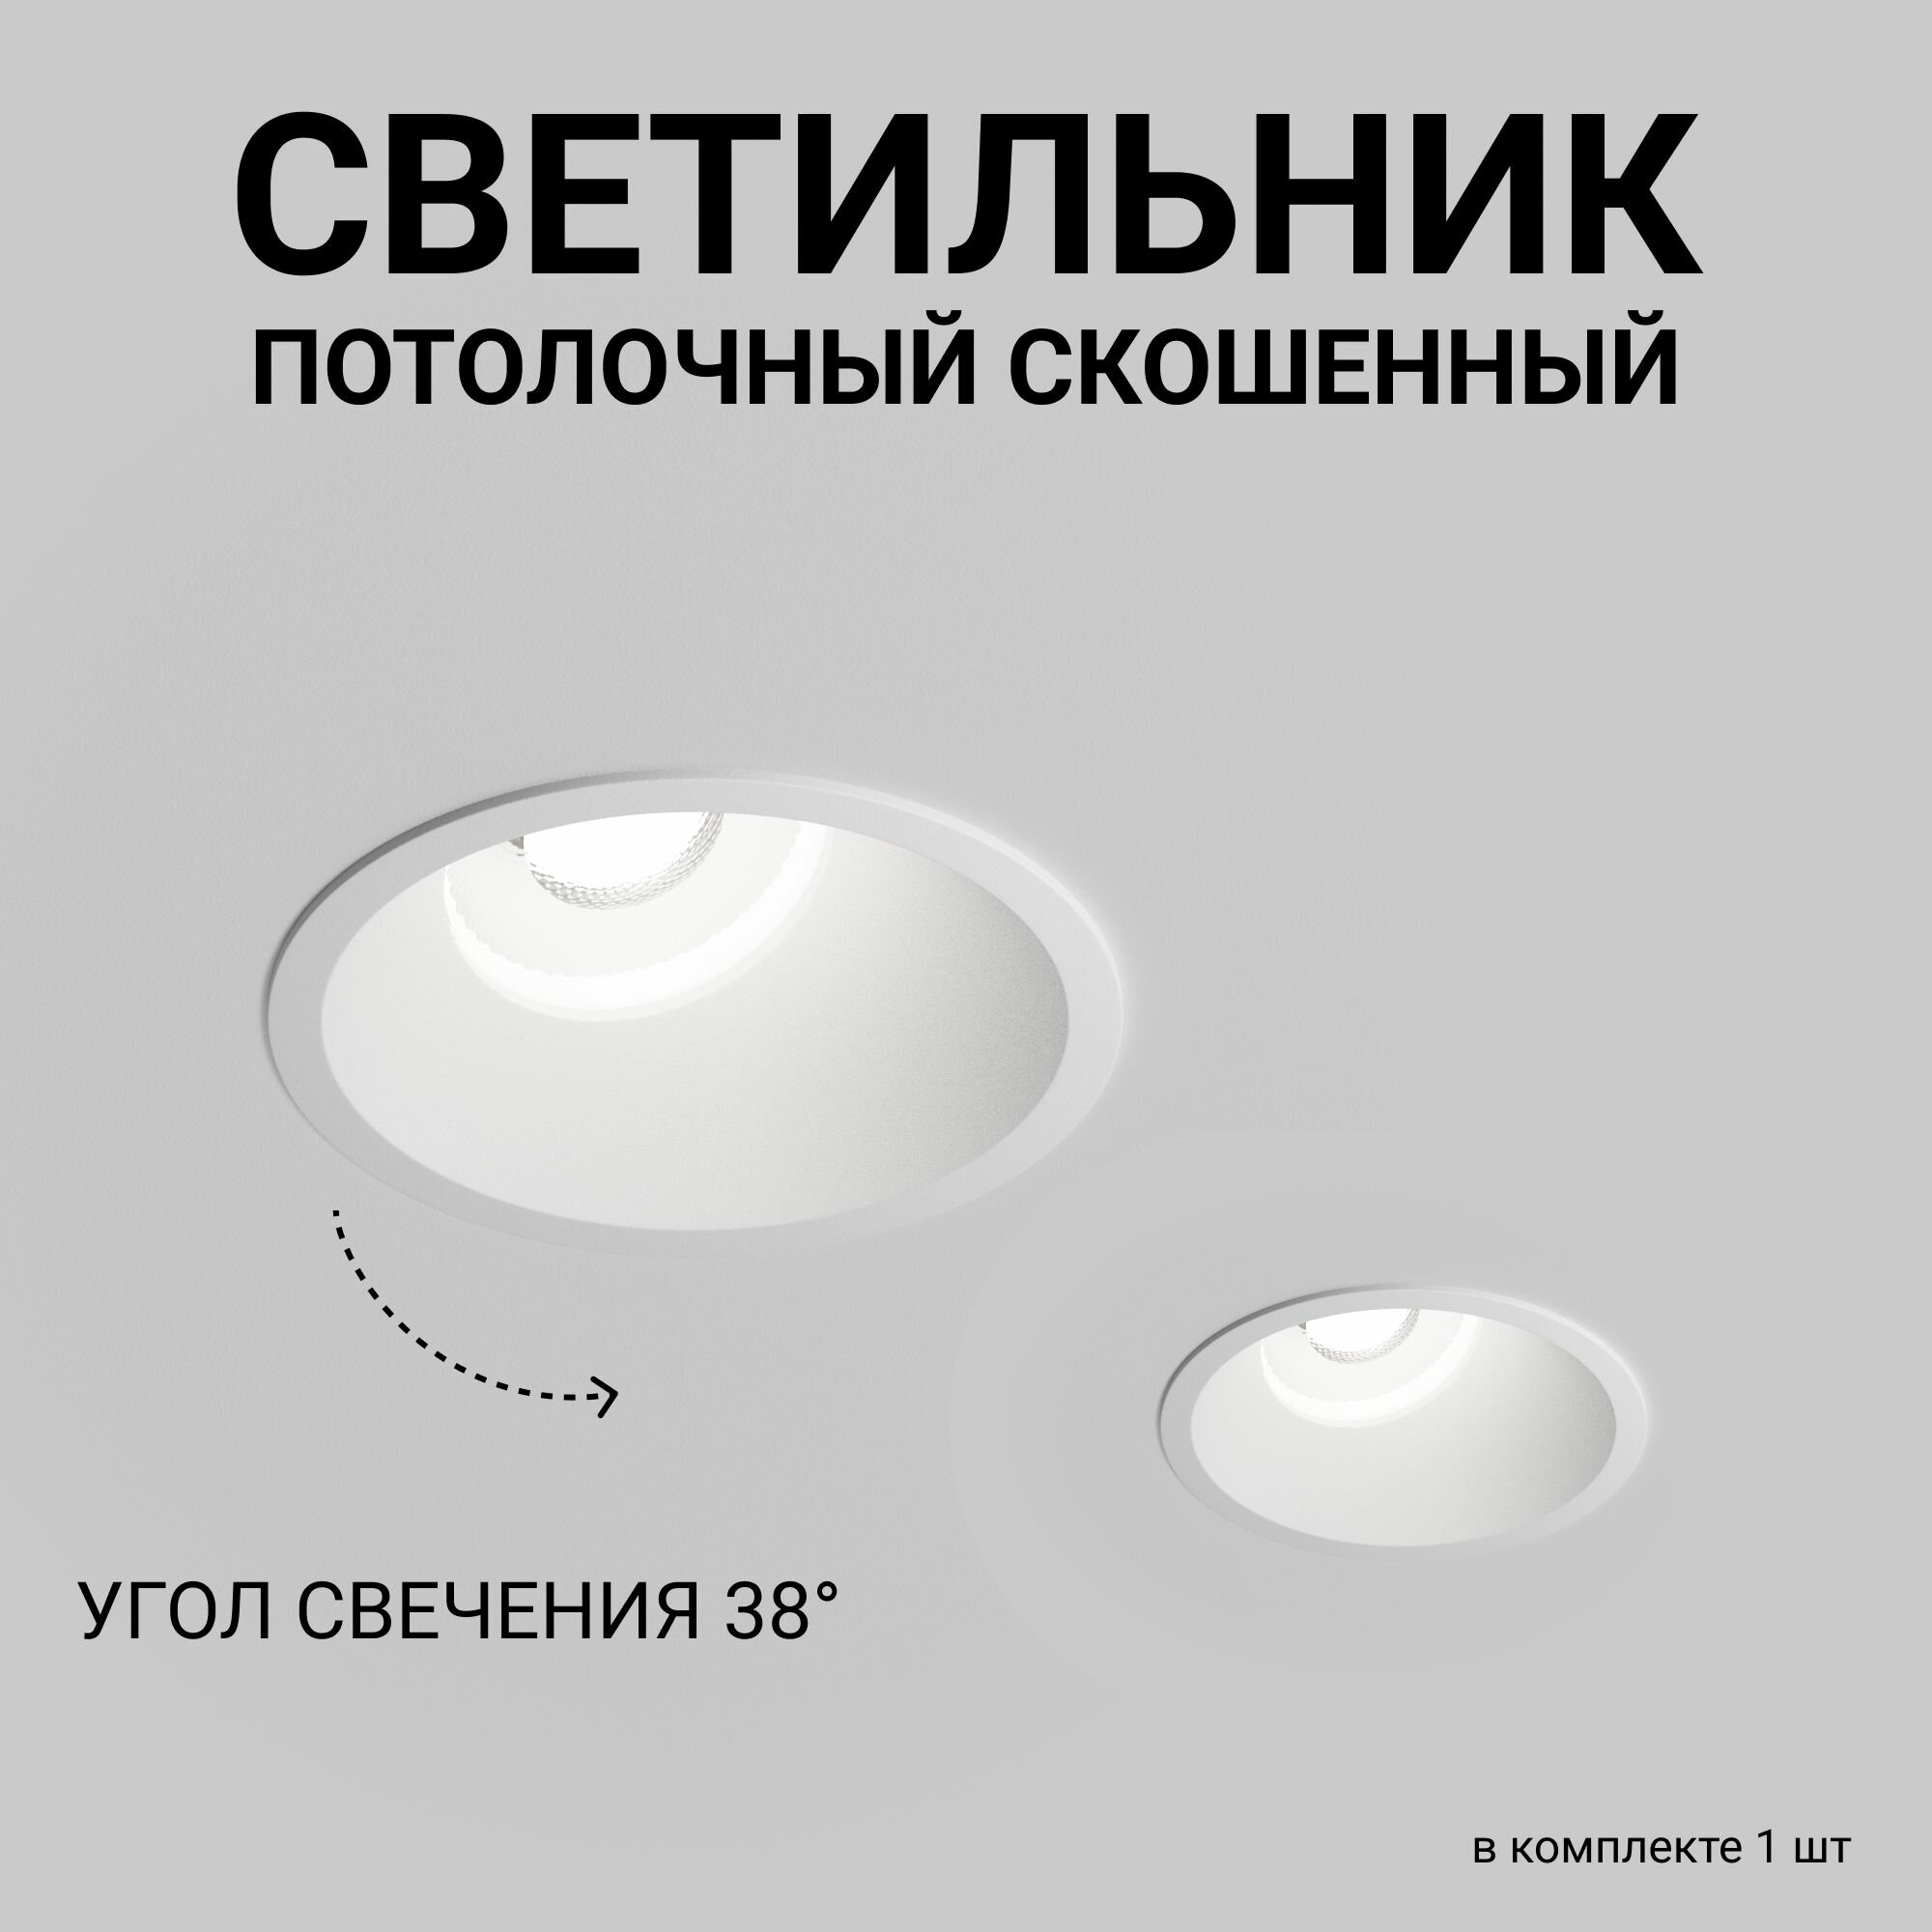 Скошенный встраиваемый точечный светильник, потолочный спотовый Level Light Hide UP-C2011RW, IP20, белый, круглый, алюминиевый